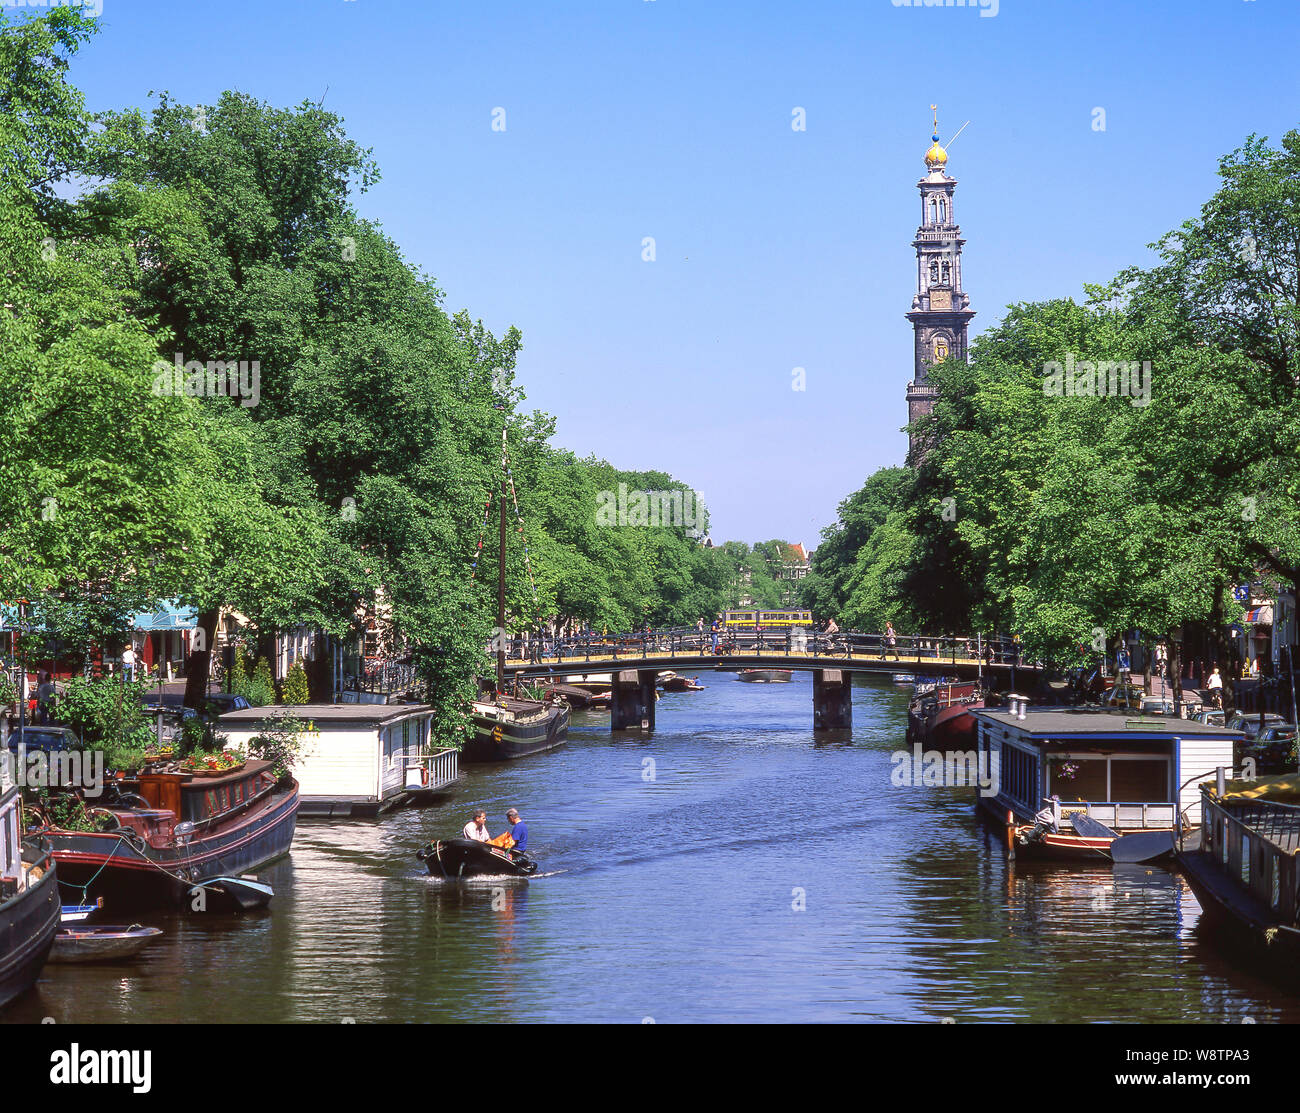 Le Westertoren tower et canal, scène Grachtengordel, Amsterdam, Noord-Holland, Royaume des Pays-Bas Banque D'Images